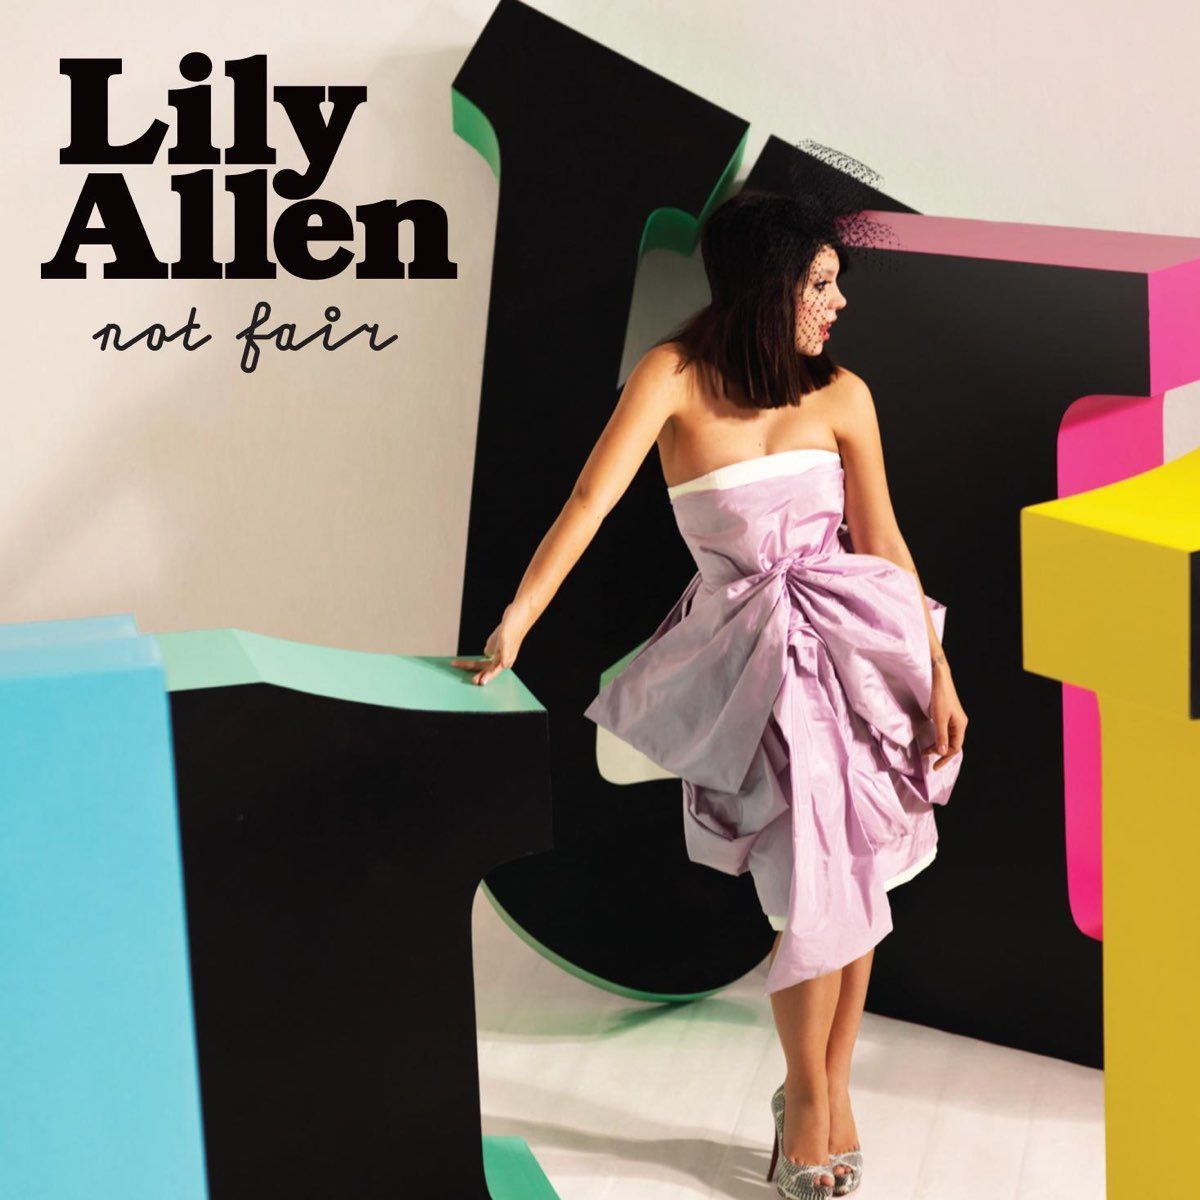 Imagem do álbum Not Fair do(a) artista Lily Allen